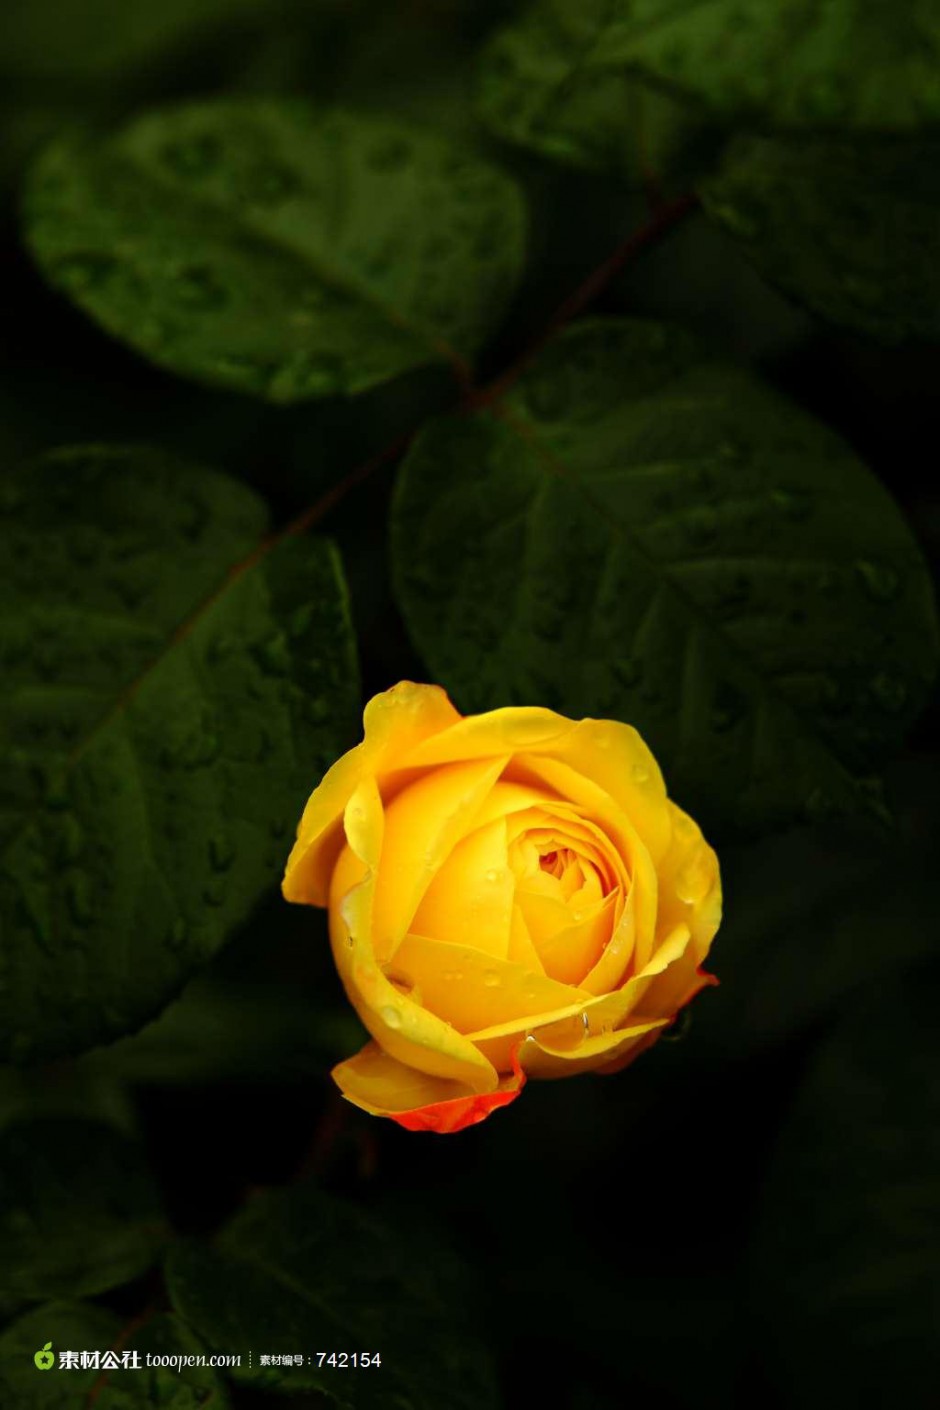 山野中浪漫盛放的黄玫瑰